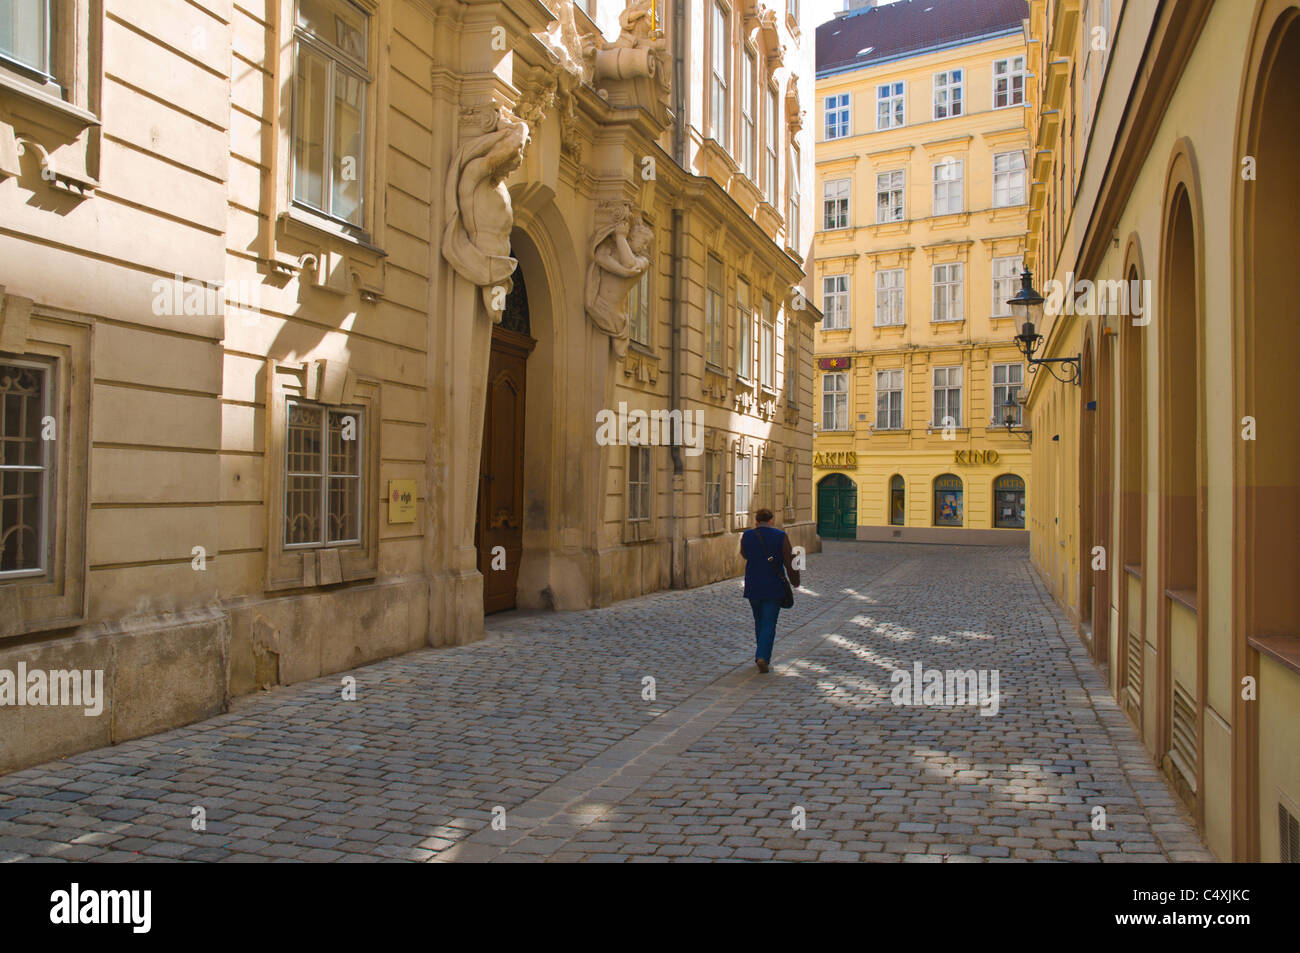 Jordangasse Straße Innere Stadt Wien Österreich Mitteleuropa Stockfoto